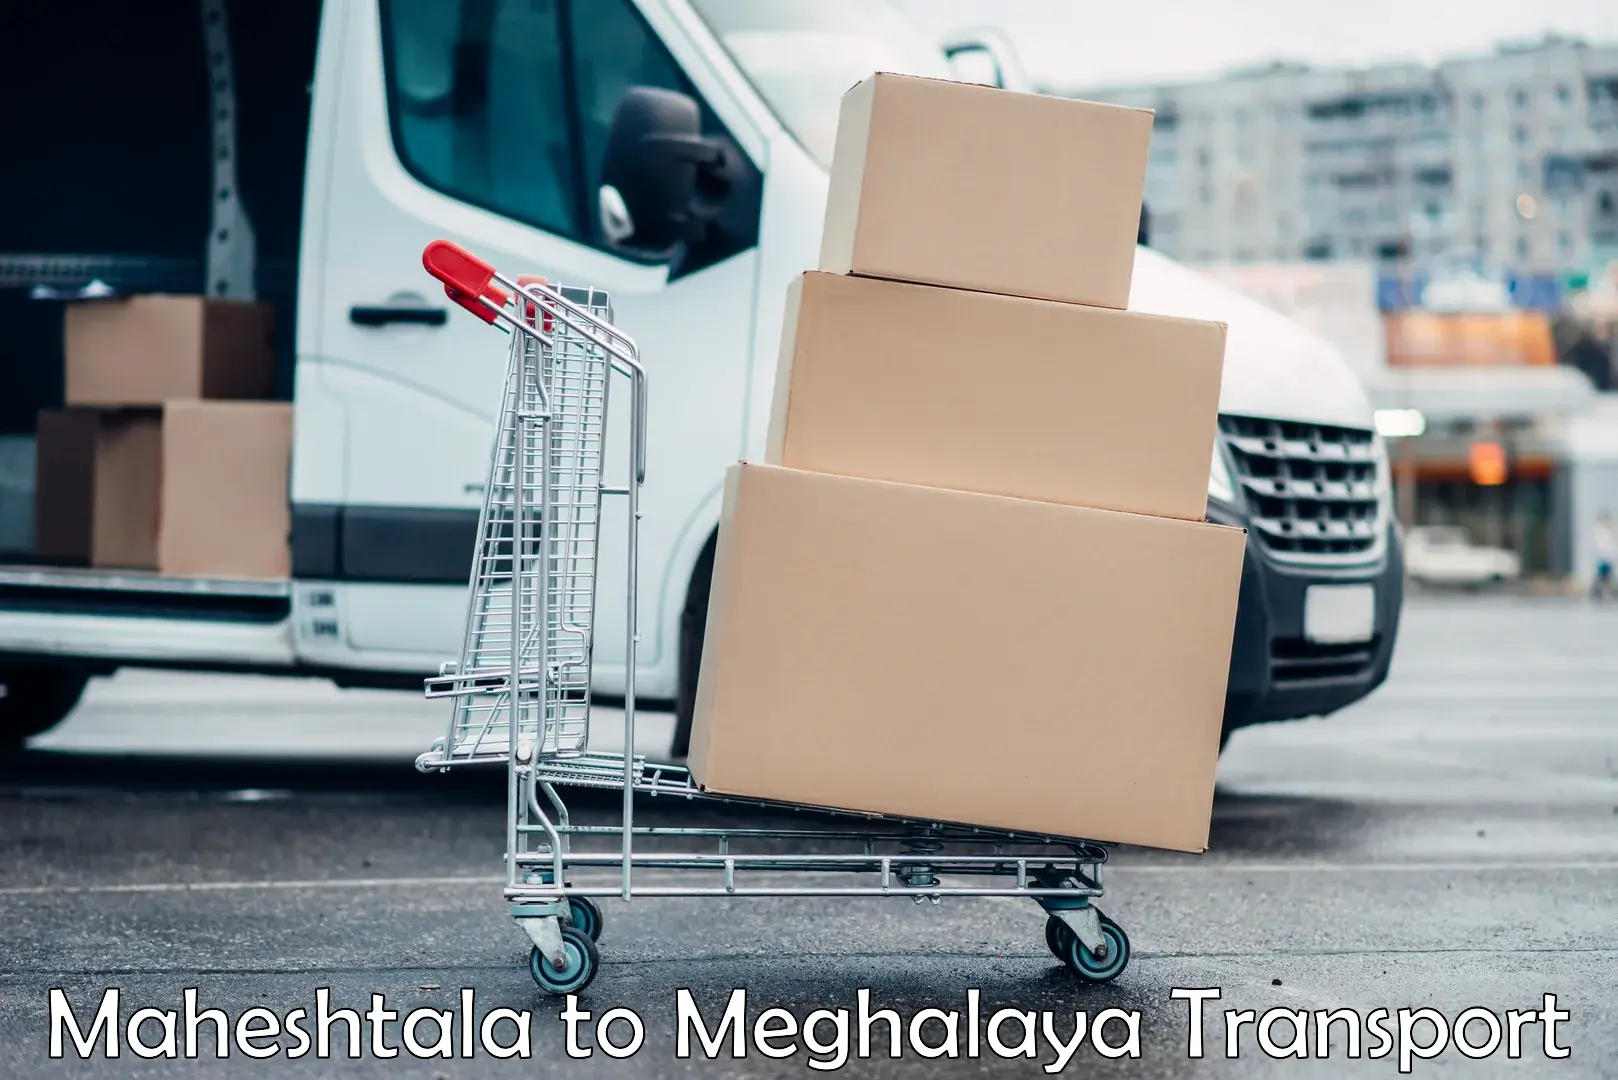 Container transport service Maheshtala to Meghalaya